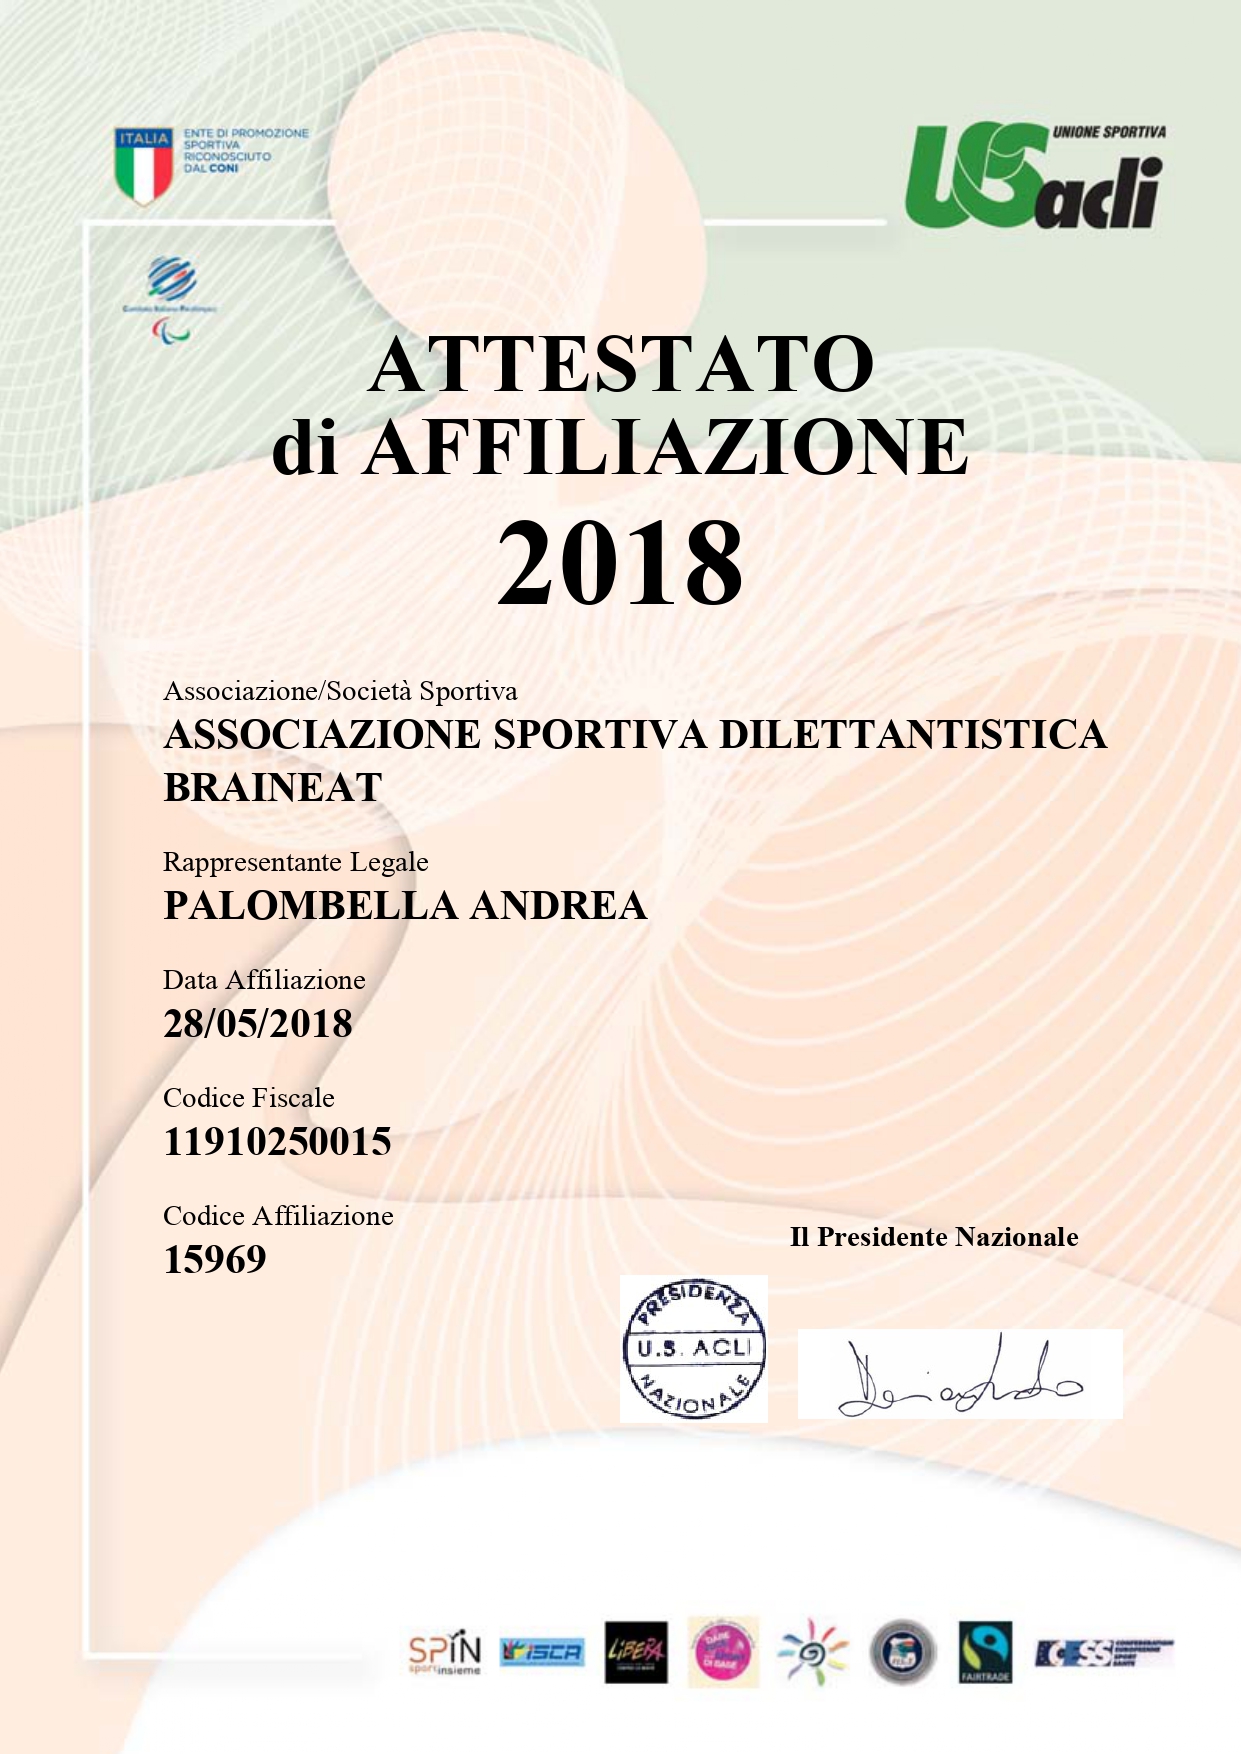 Attestato_2017_2018 (1)_page-0001